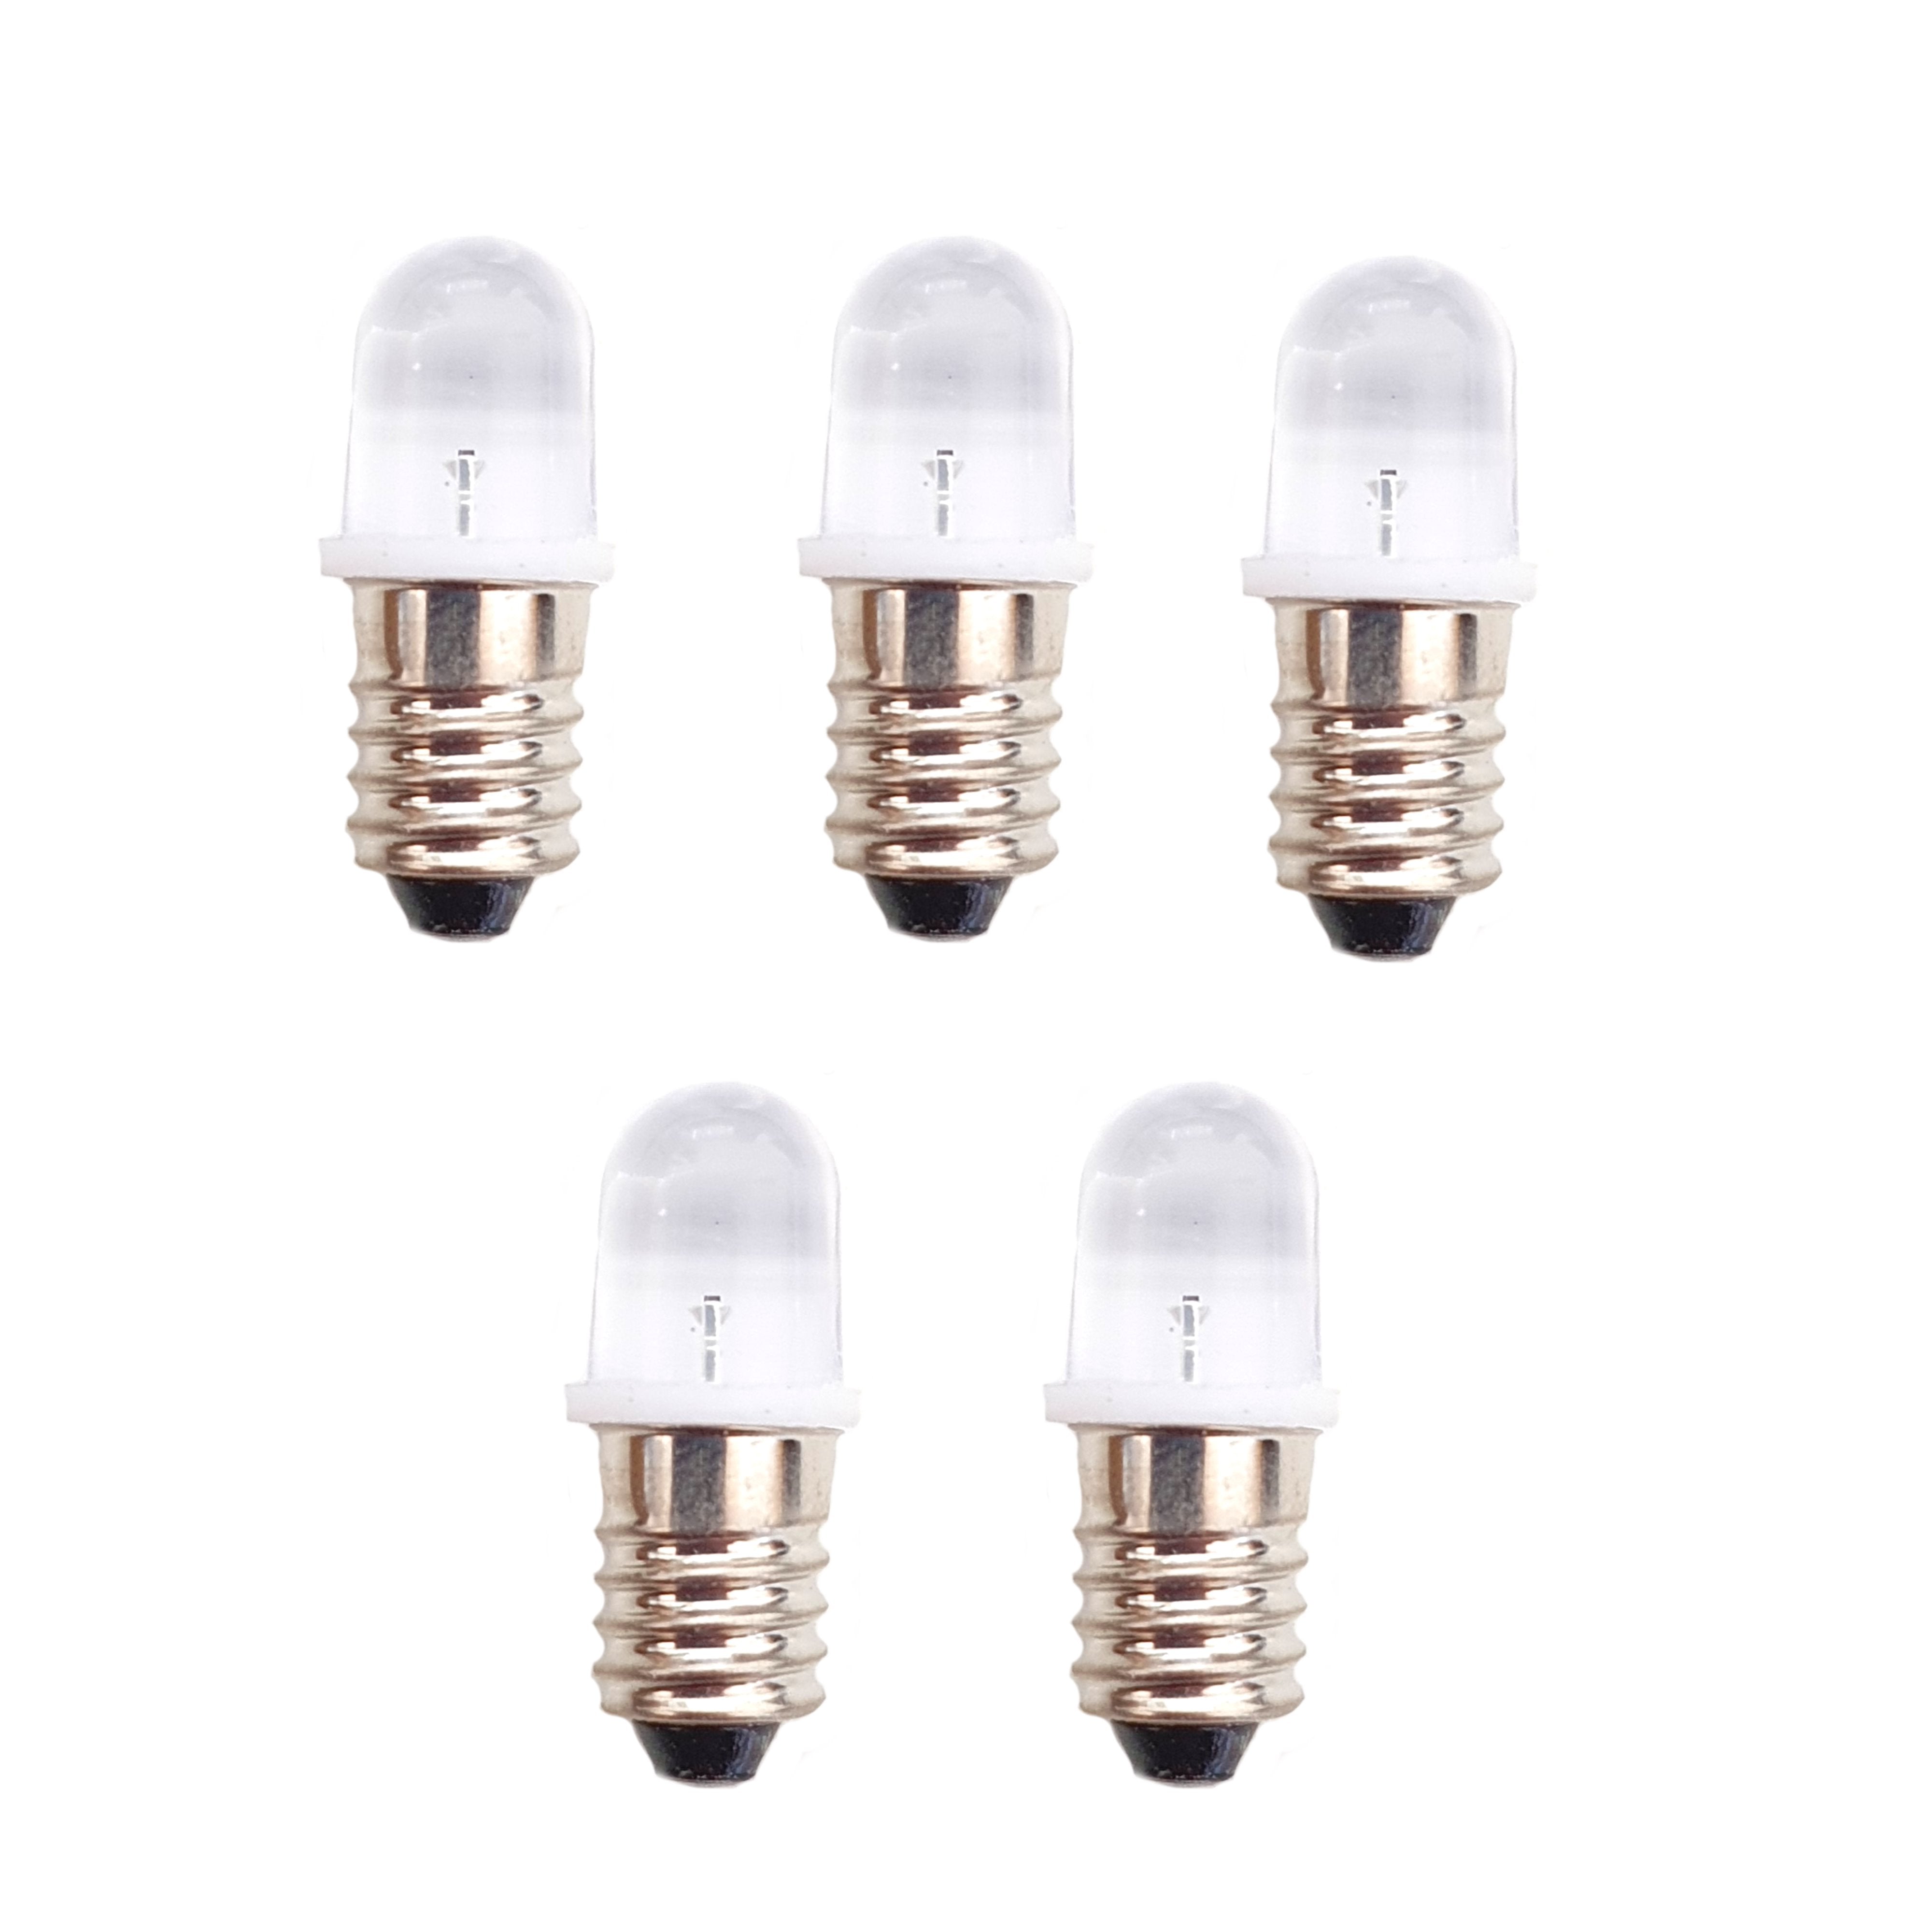 5 x 6V MES E10 LED Lamp Bulb 10mm Diameter - White